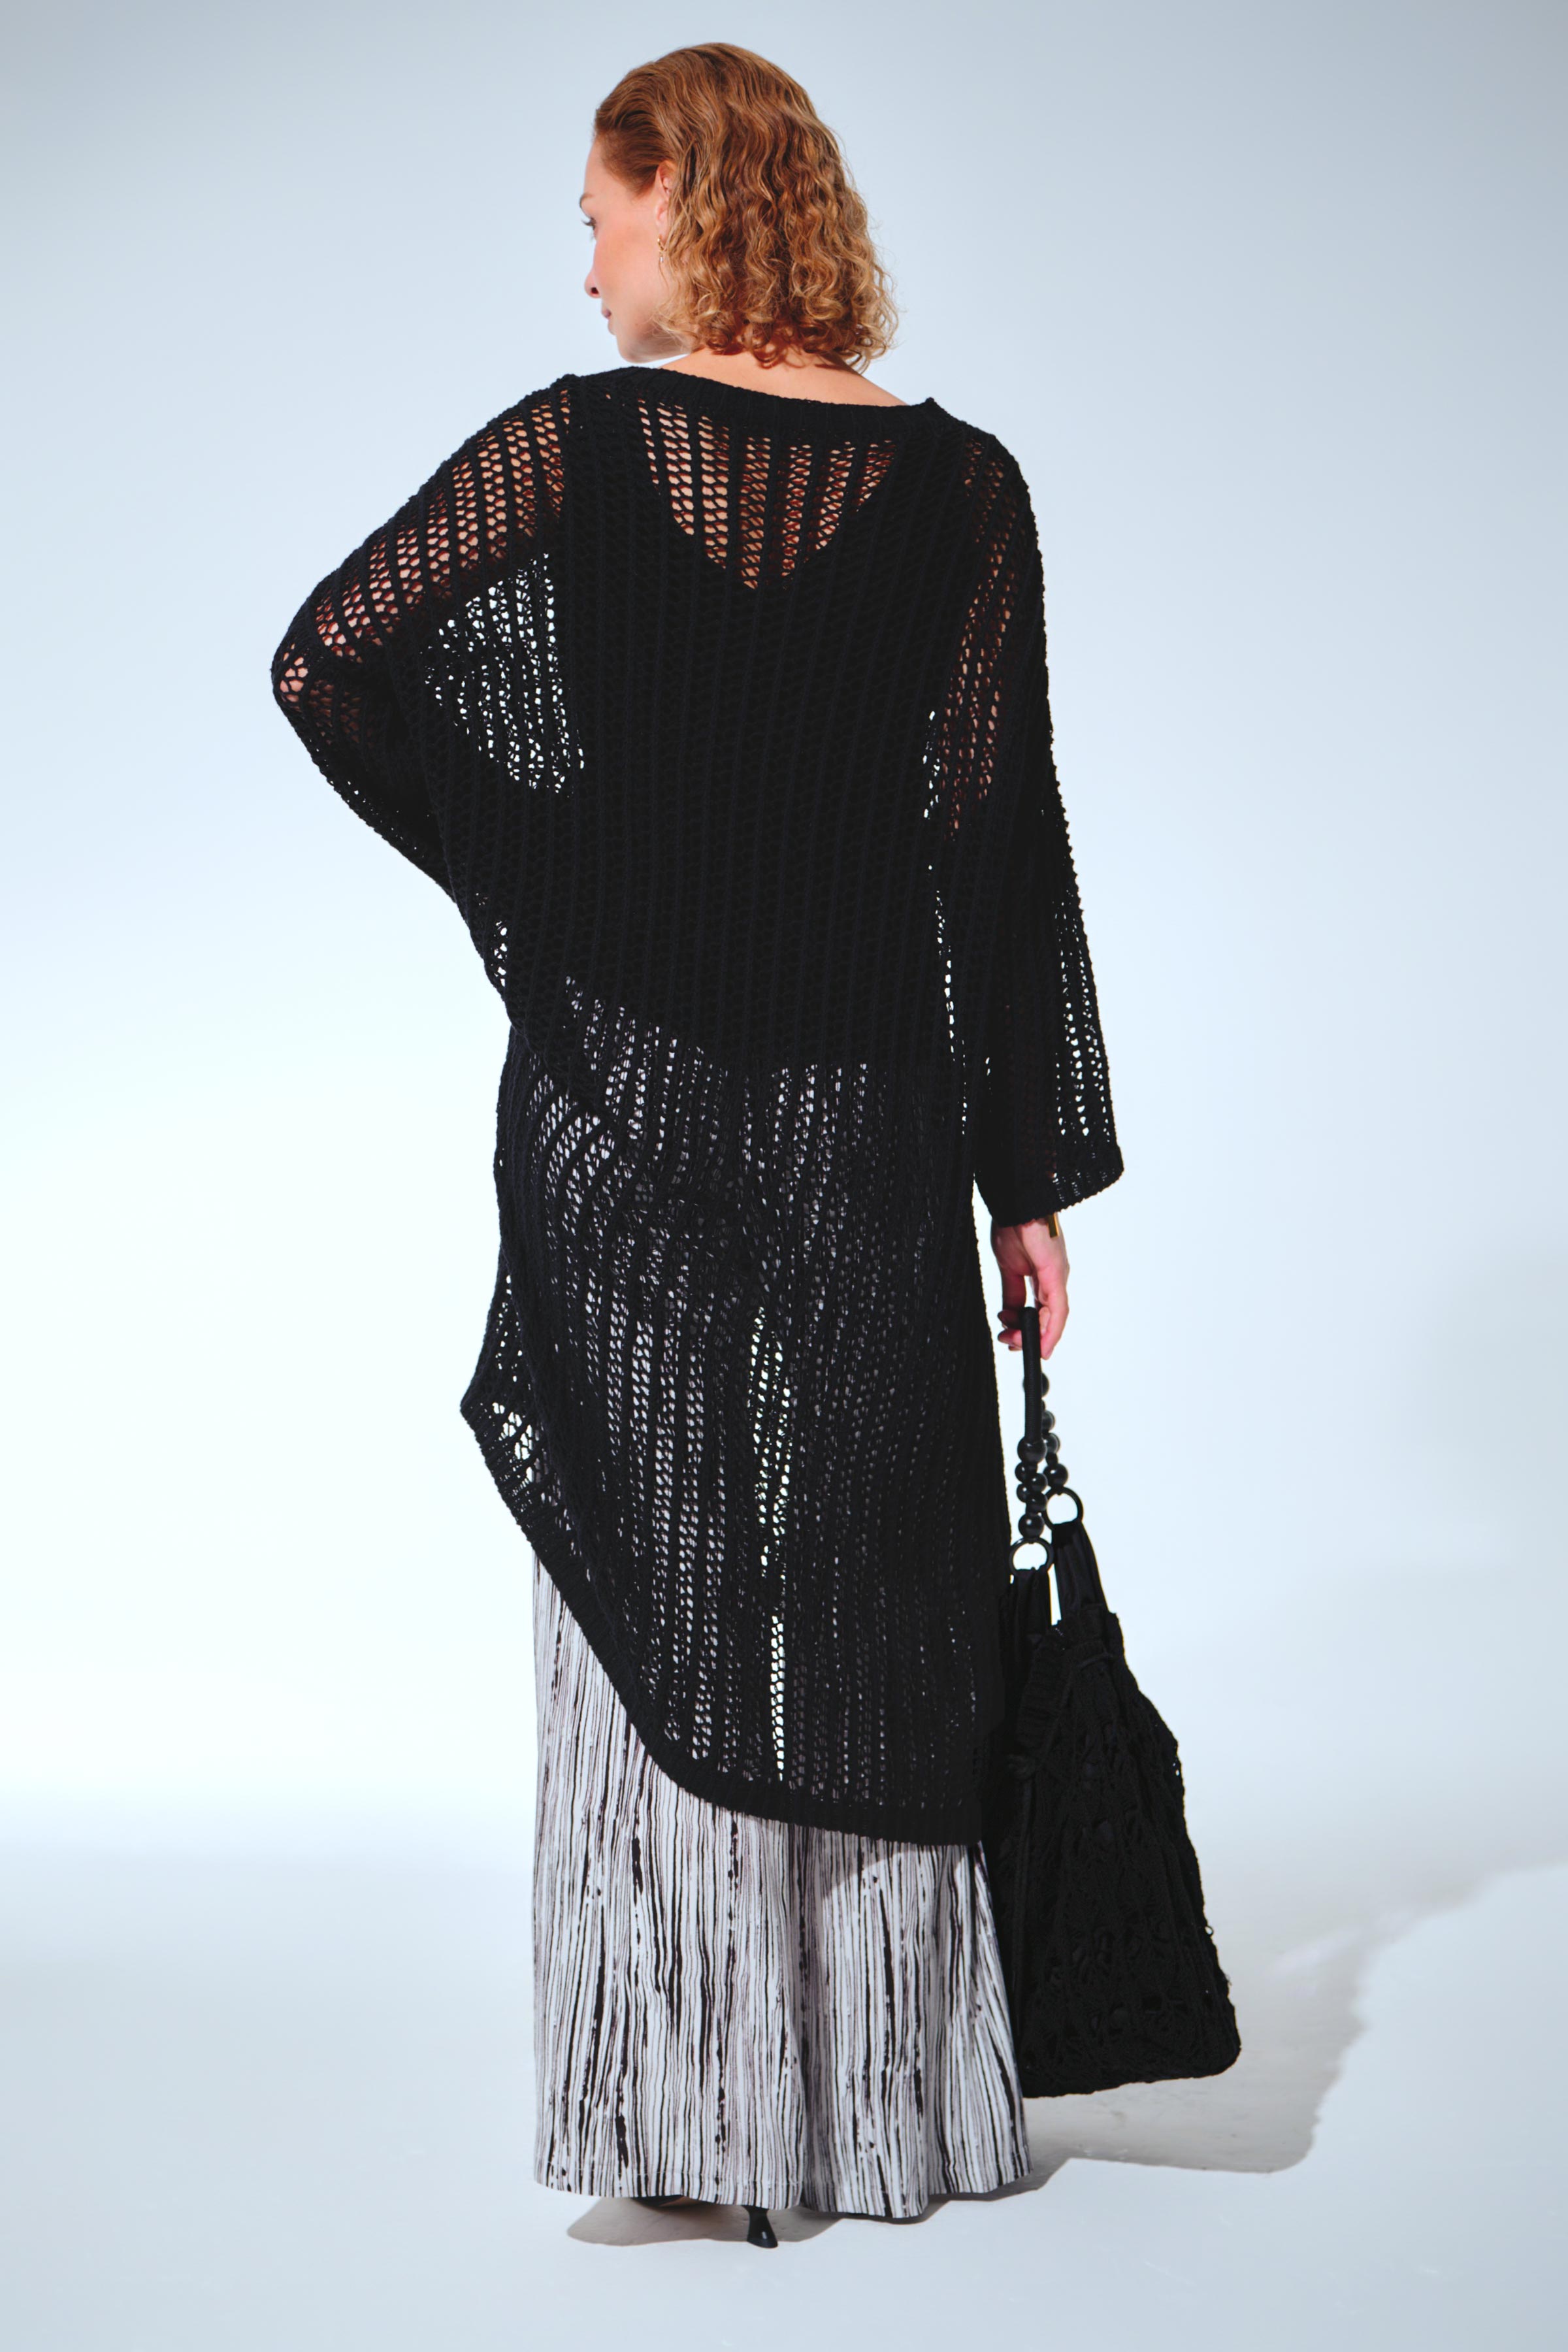 Платье Сетка 00 Черный (noir) от Lesel (Лесель)! Заказывайте по ✆ 8 (800) 777 02 37